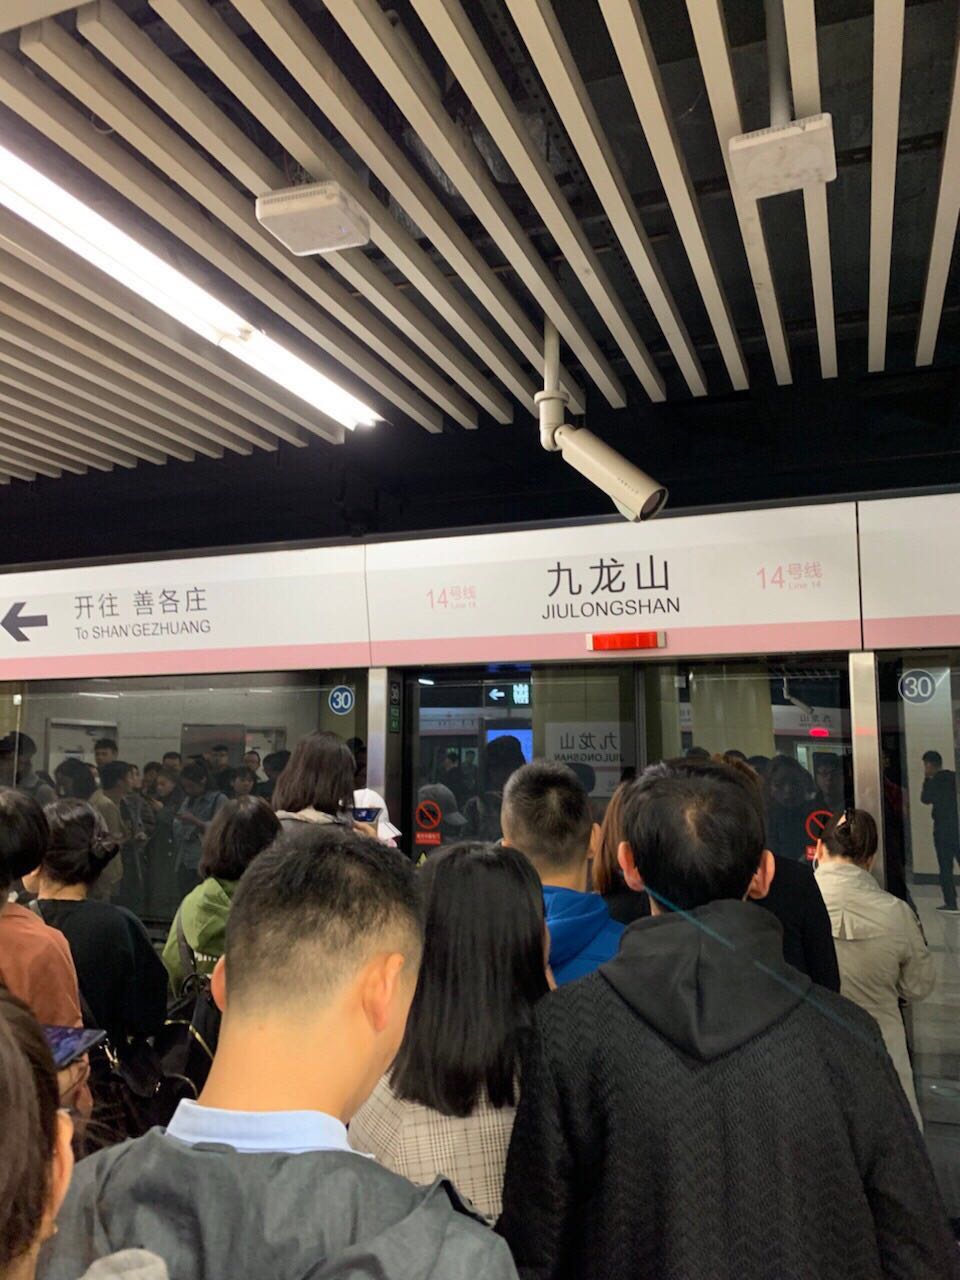 地铁过站不开门致乘客迟到 北京地铁:可领致乘客信